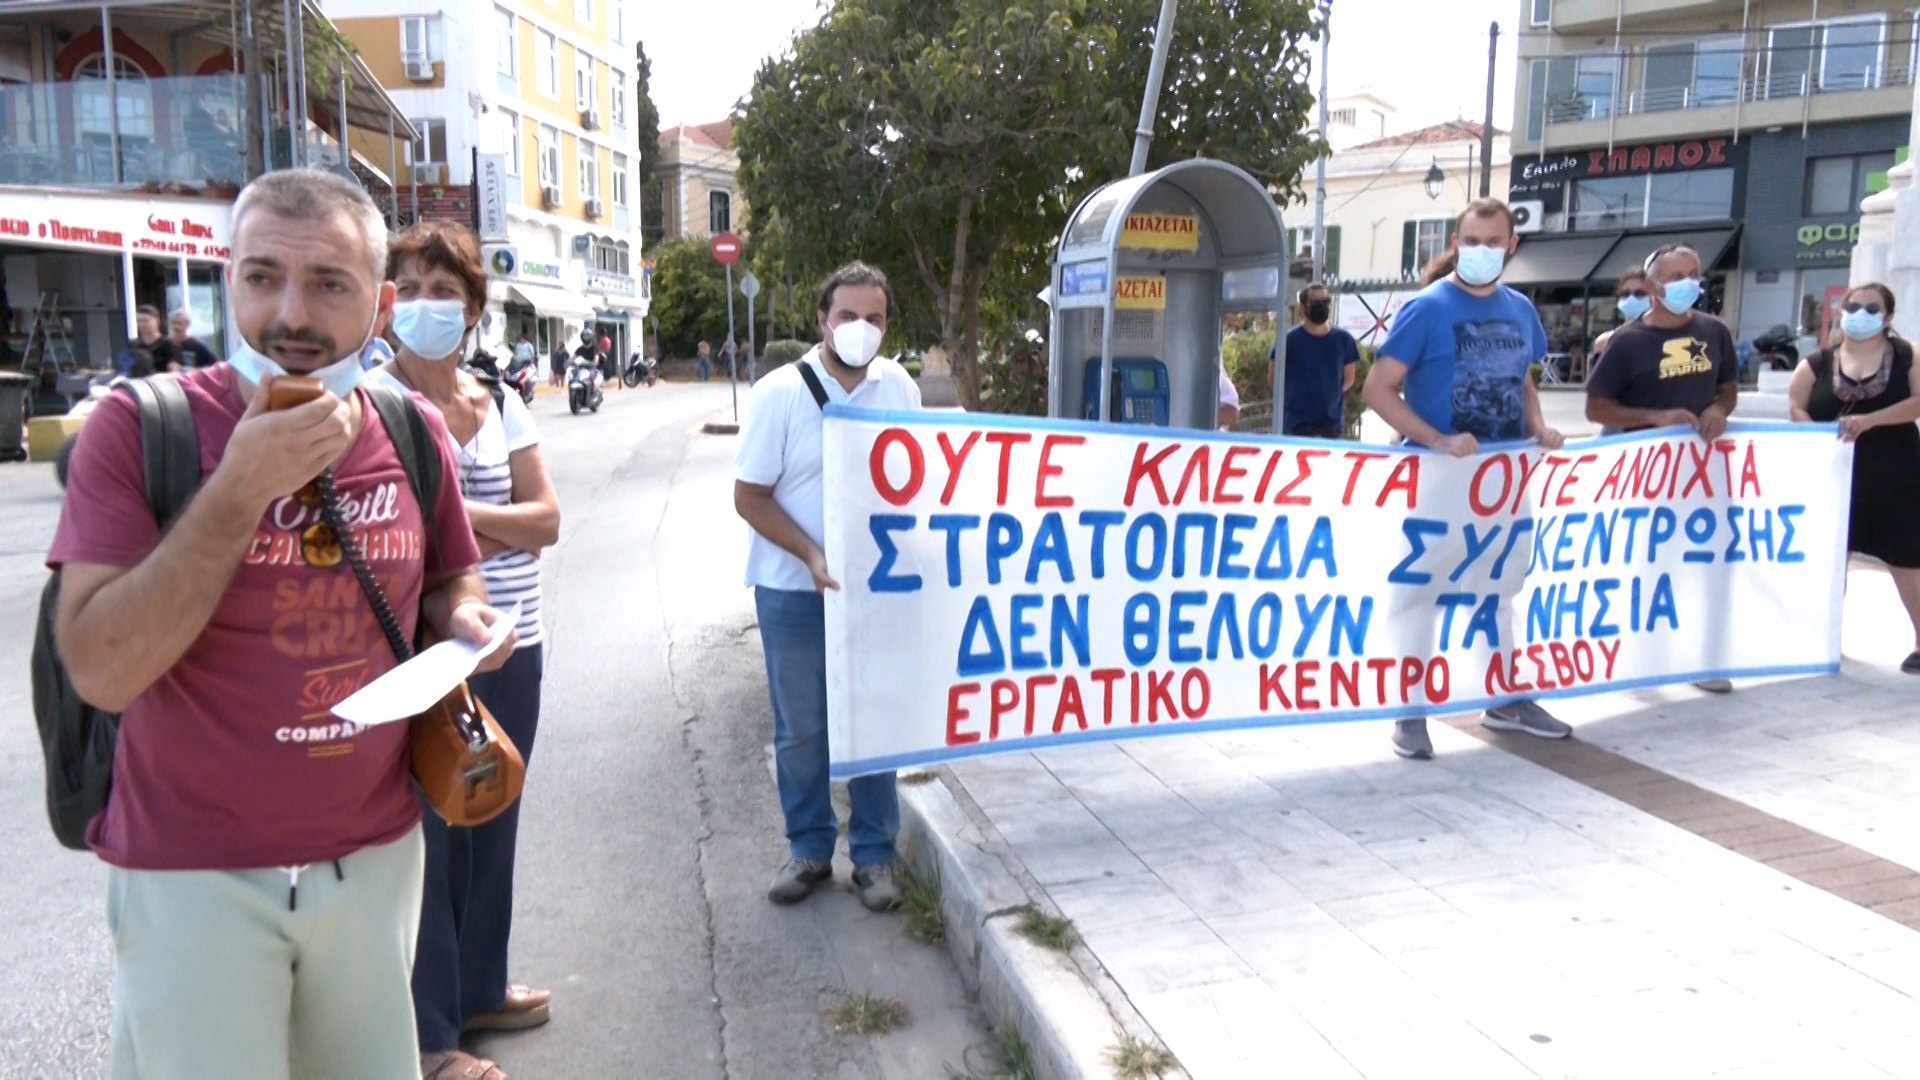 Συγκέντρωση διαμαρτυρίας έξω από την Περιφέρεια για την επίσκεψη της Μπεάτε Γκμίντερ